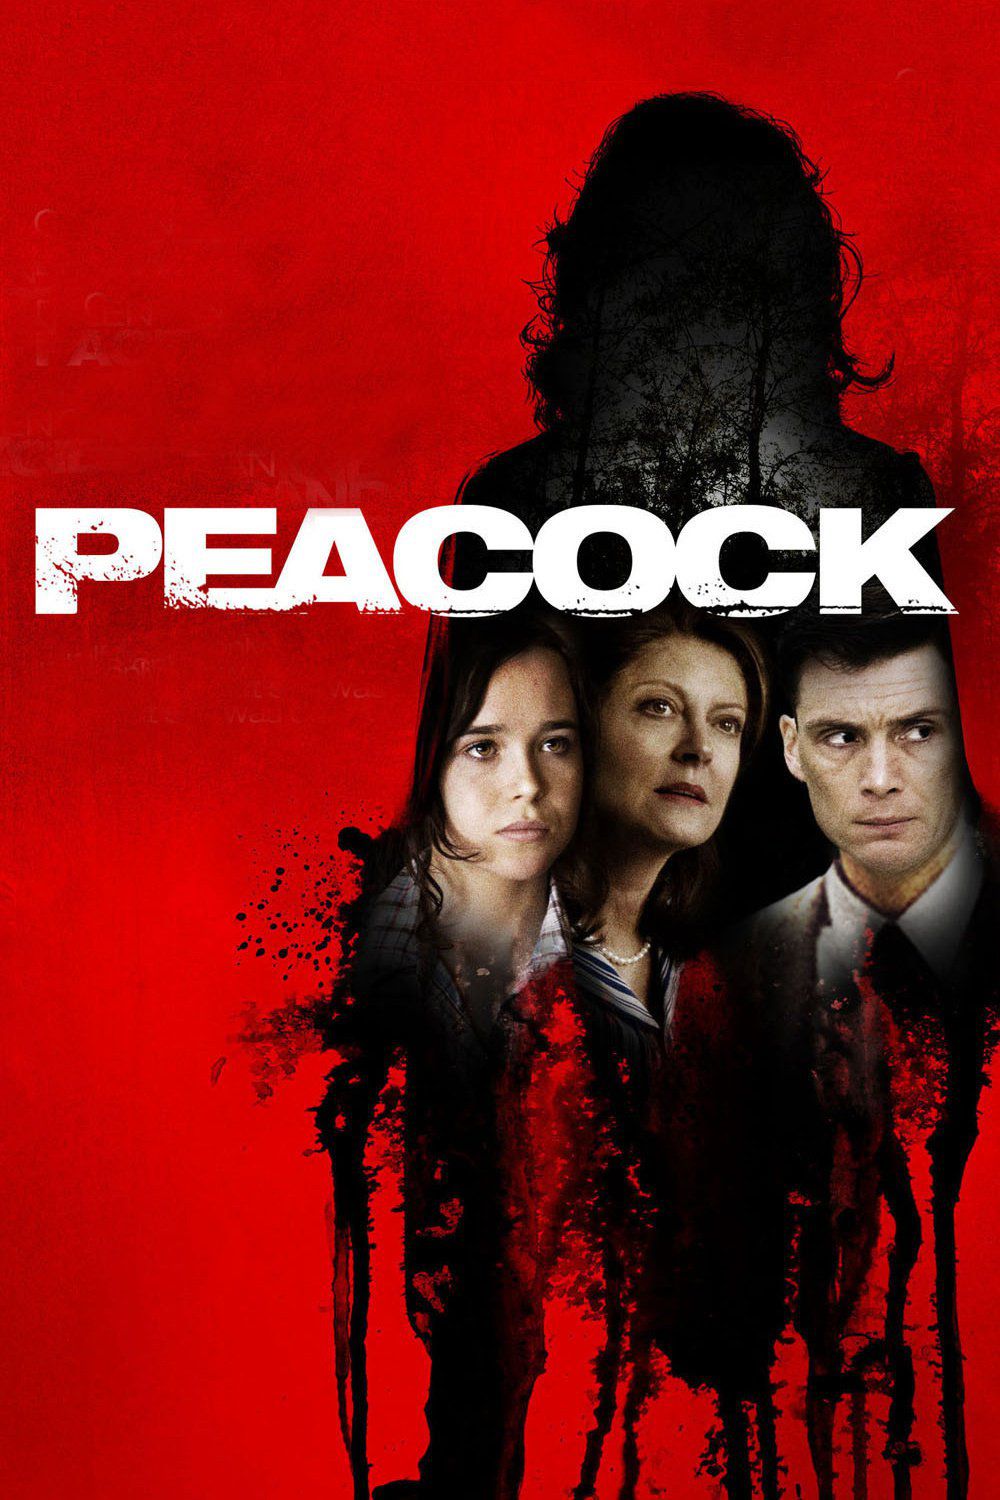 Le secret de Peacock - Film (2012) streaming VF gratuit complet